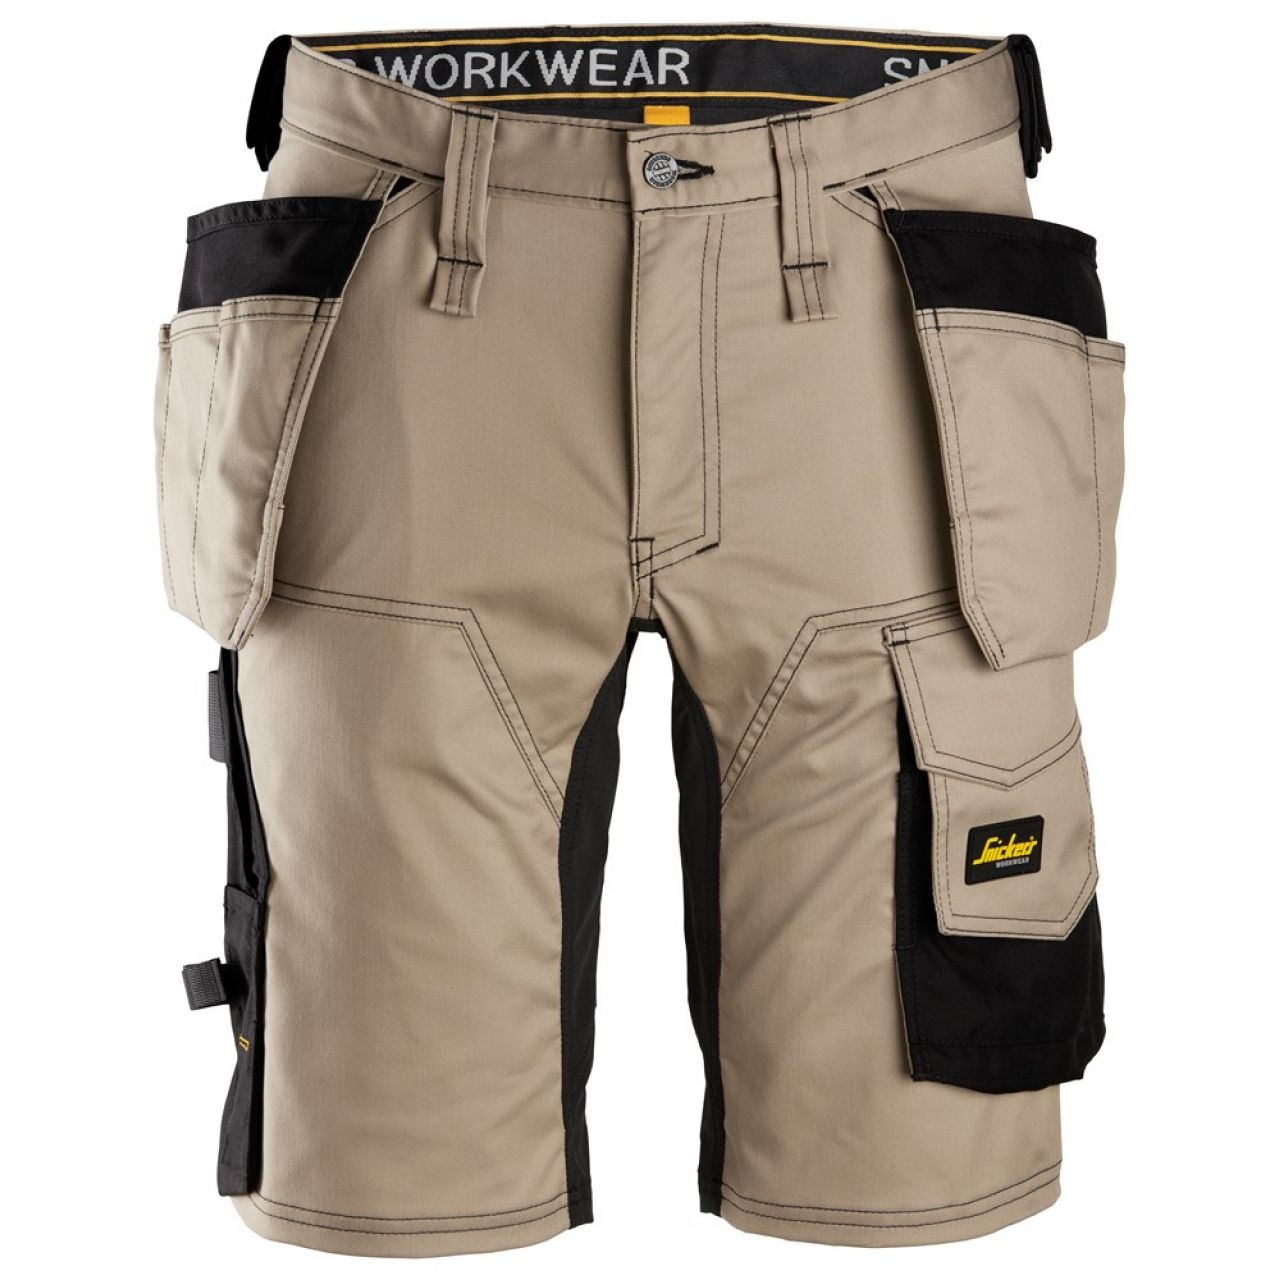 6141 Pantalones cortos de trabajo elásticos con bolsillos flotantes AllroundWork beige-negro talla 46